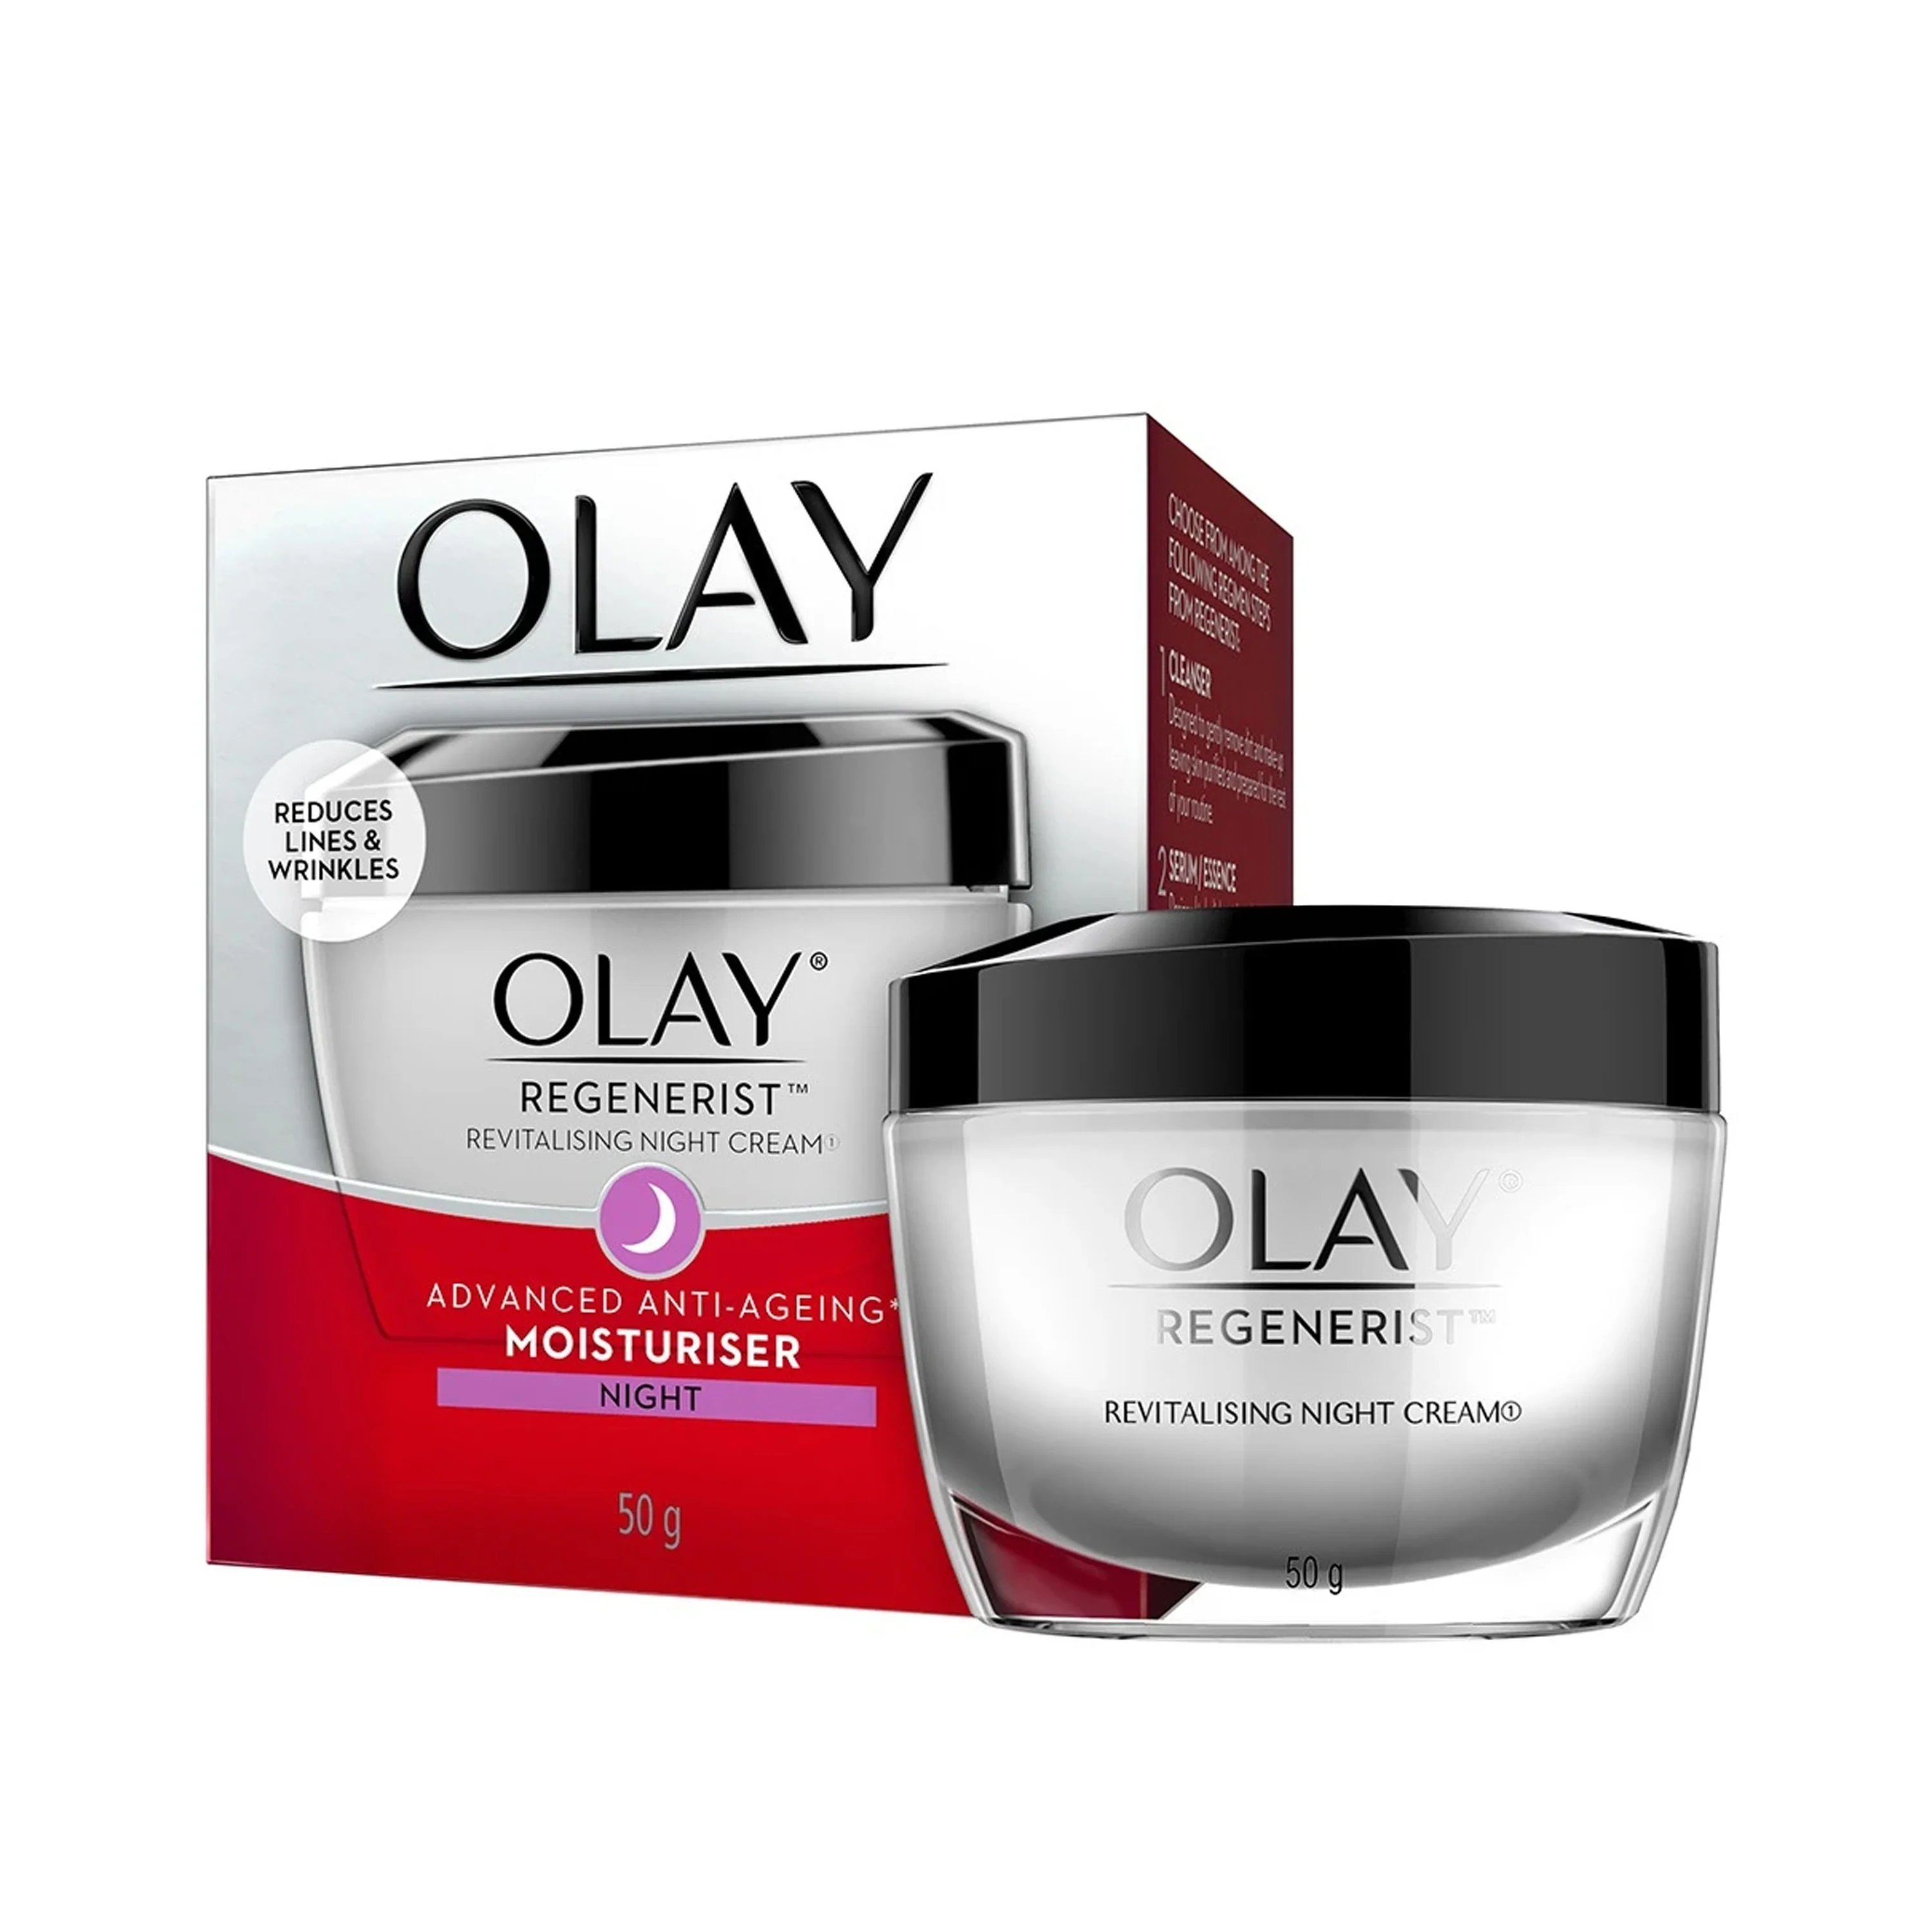 Olay Regenerist Revitalizing Night Cream